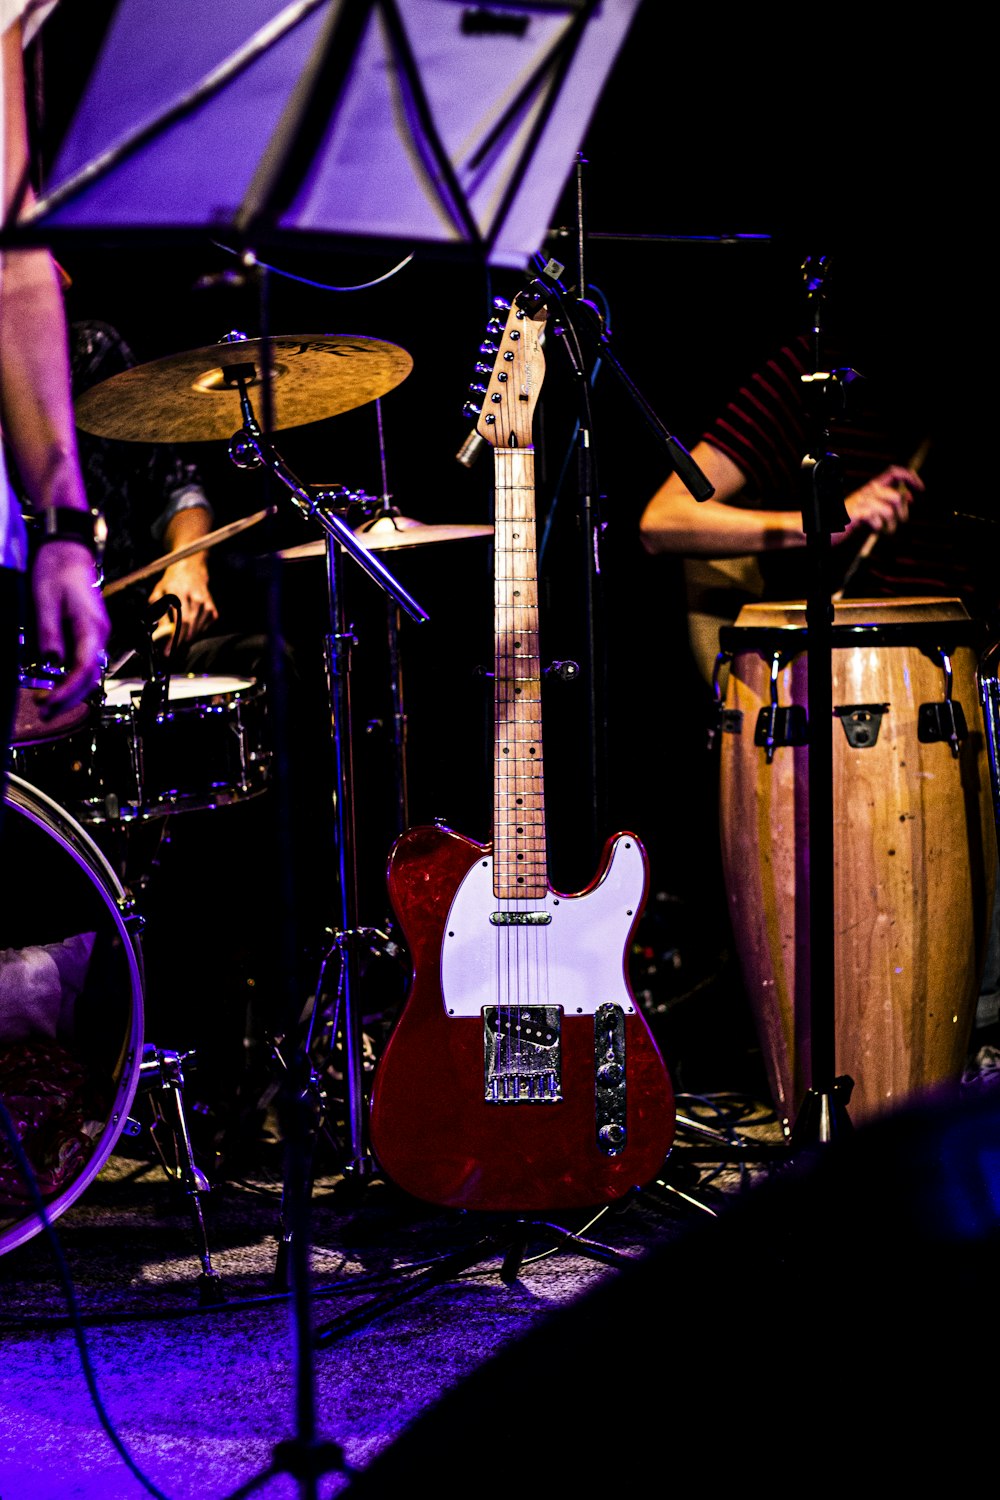 Fotografía de primer plano de guitarra eléctrica roja y blanca